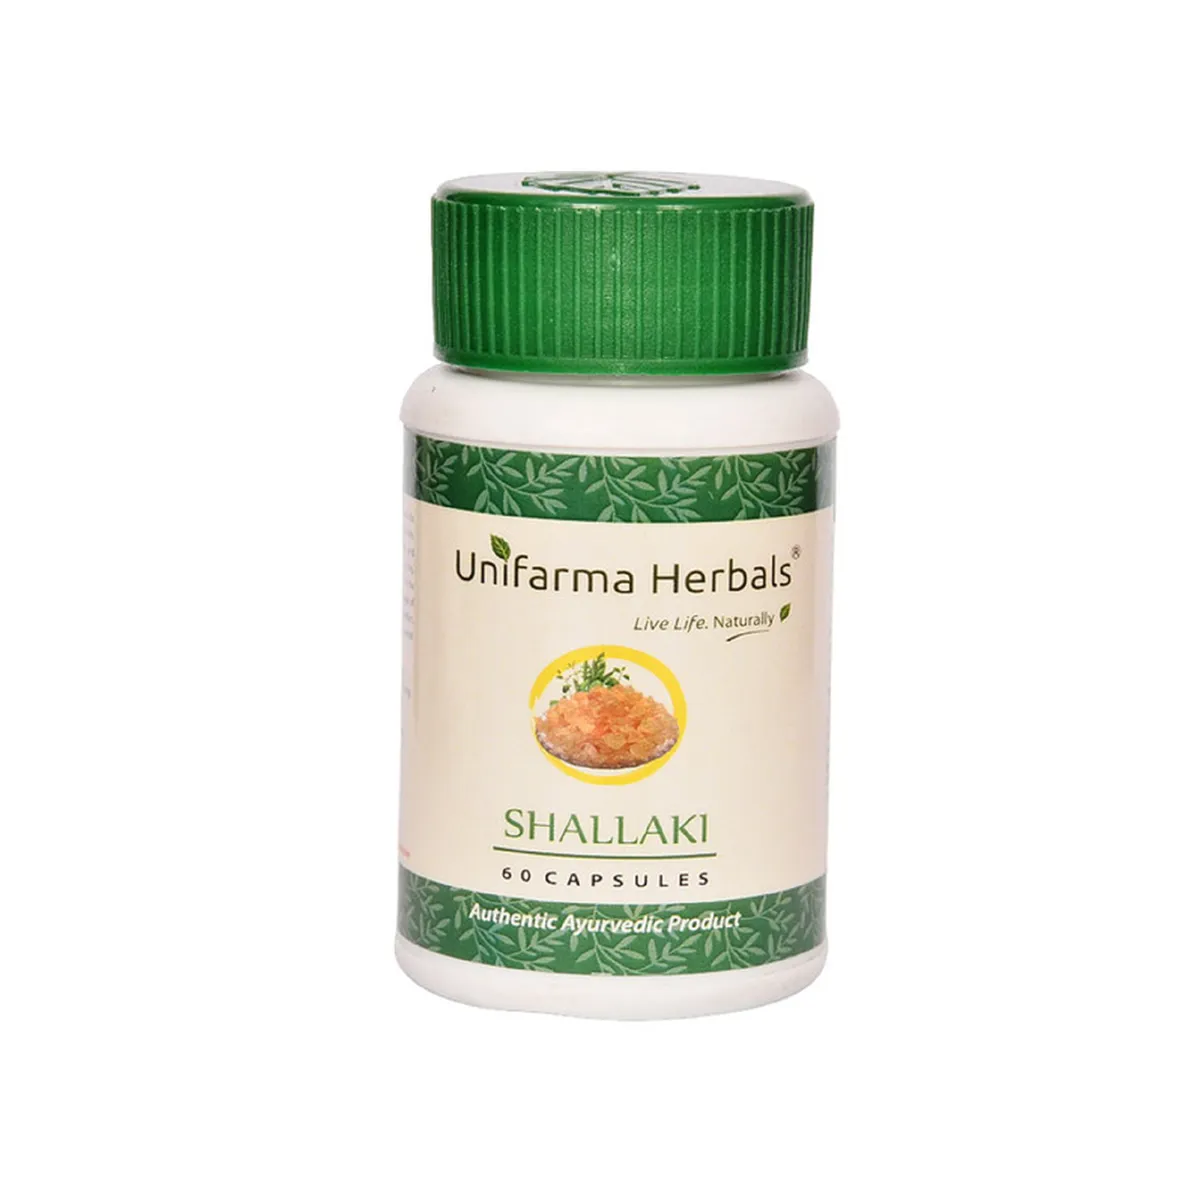 Unifarma Herbals Shallaki 60caps